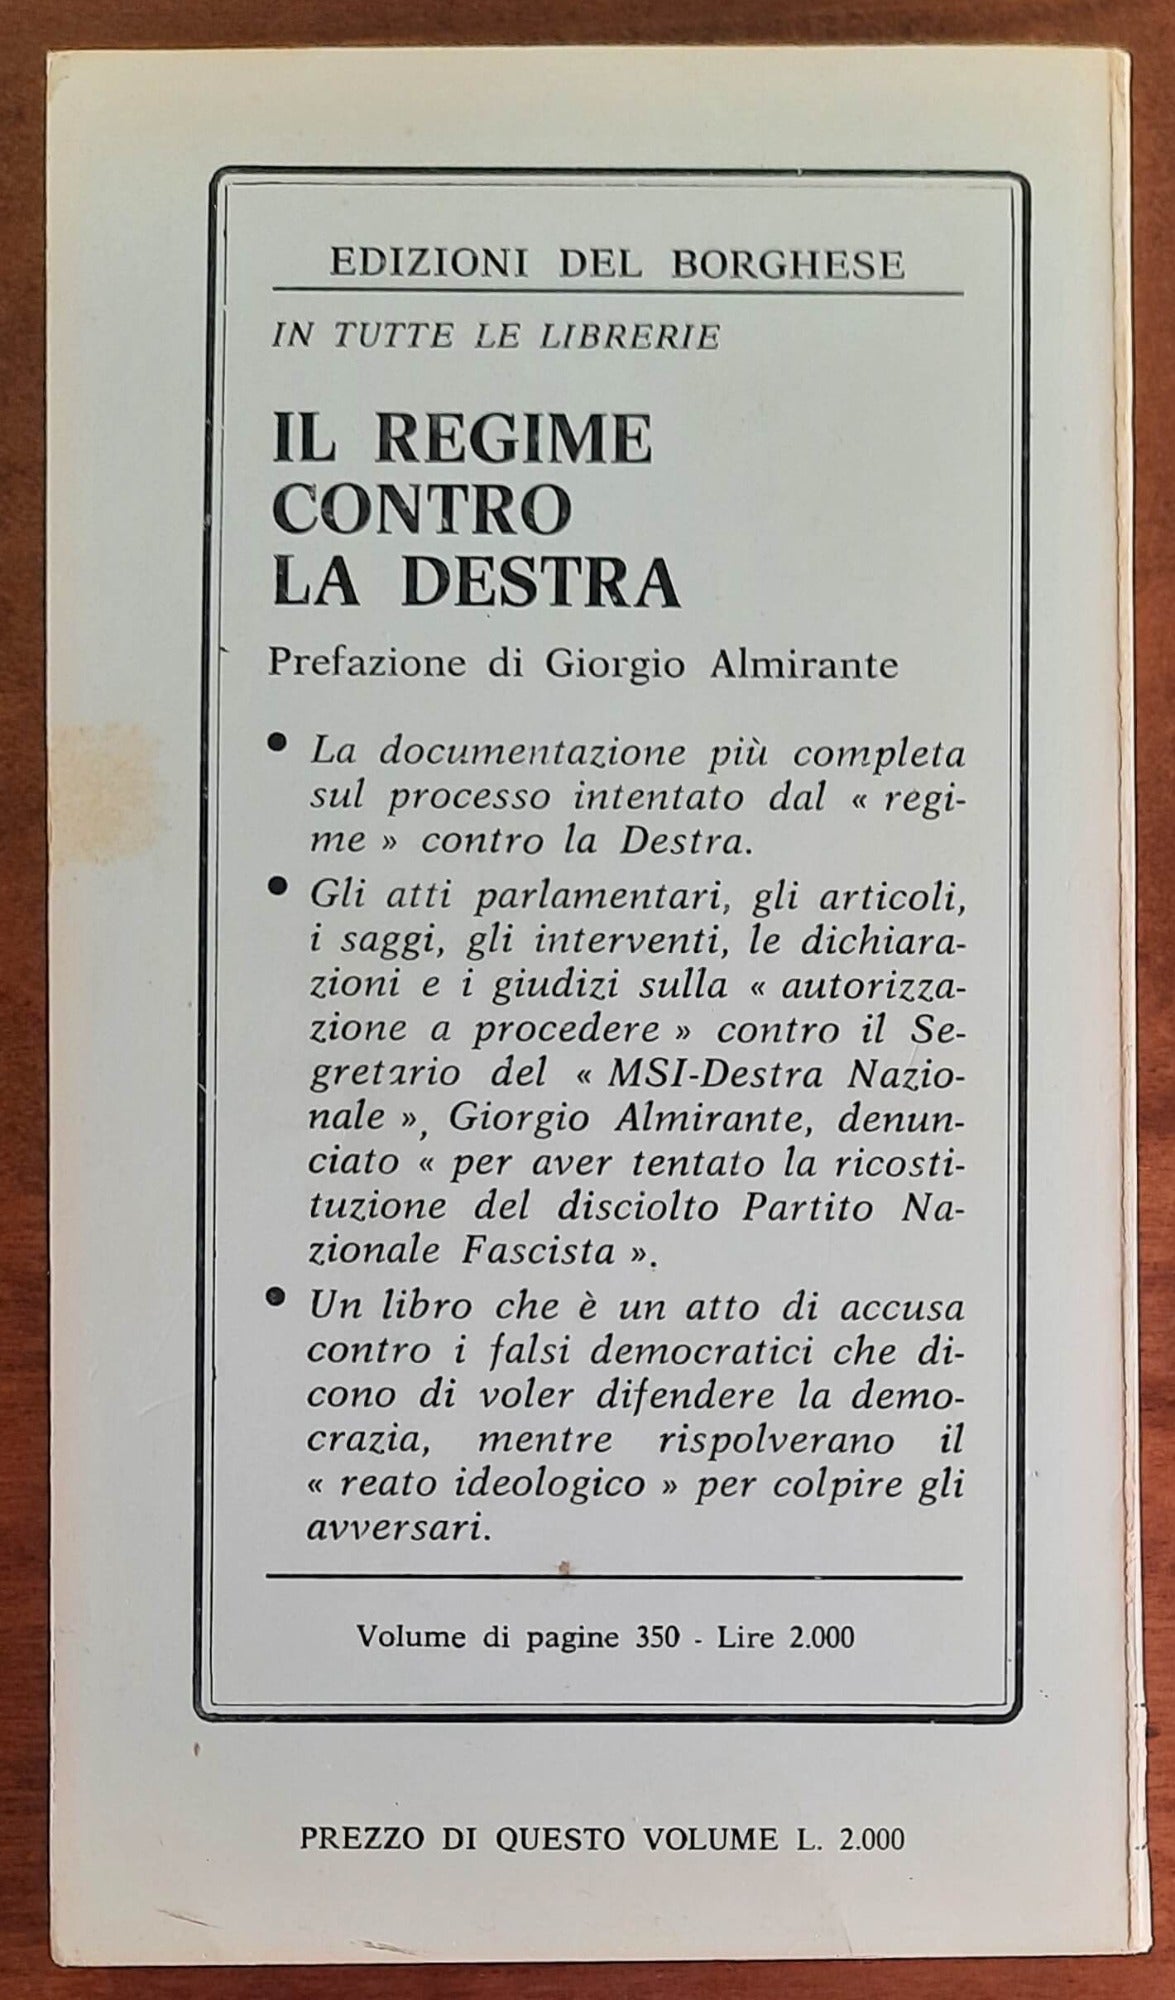 Autobiografia di un «fucilatore» - di Giorgio Almirante - Edizioni Del Borghese